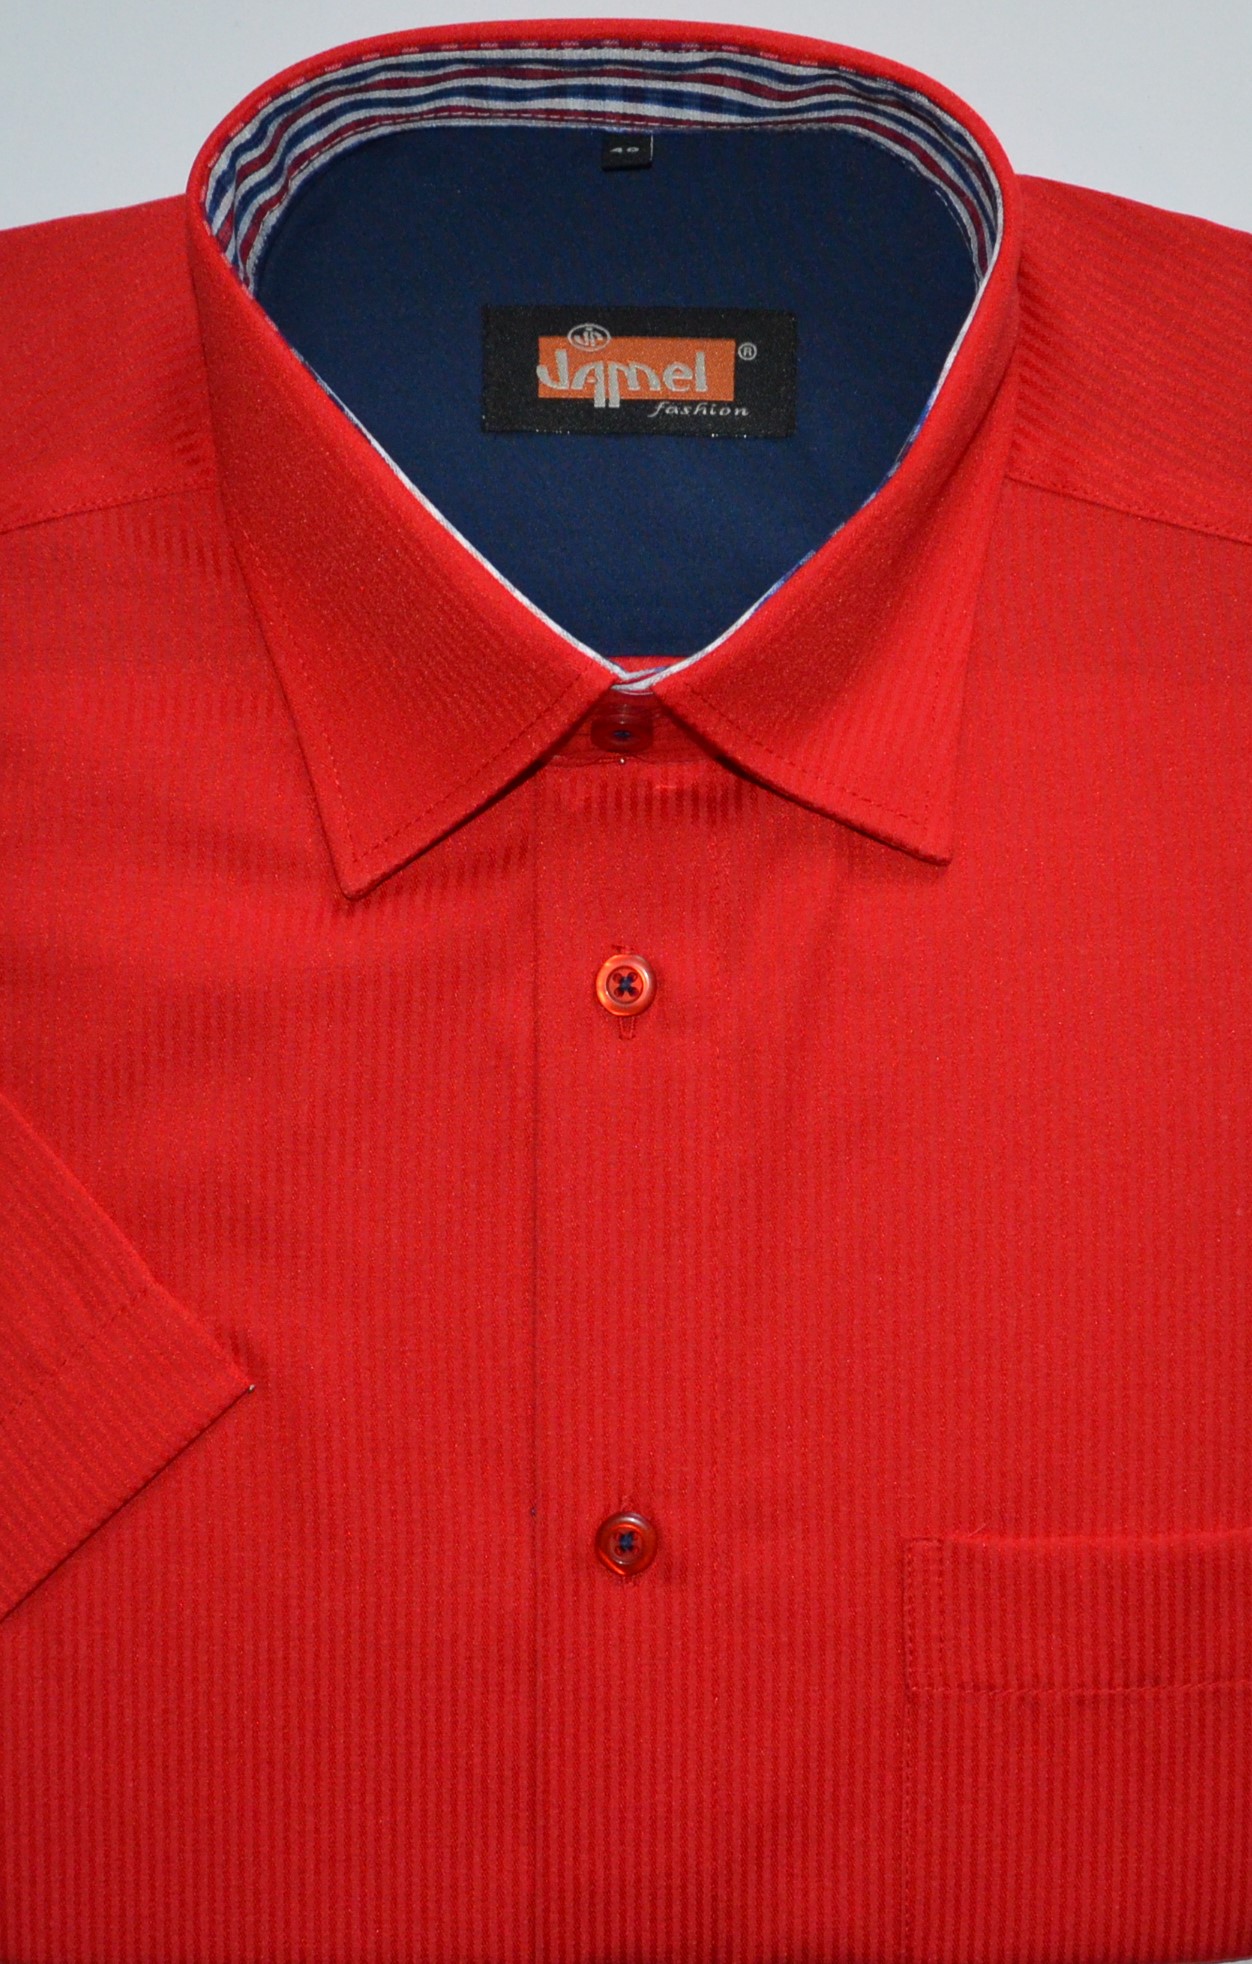 Pánská košile krátký rukáv Jamel Fashion 502 307/33 Velikost: 40